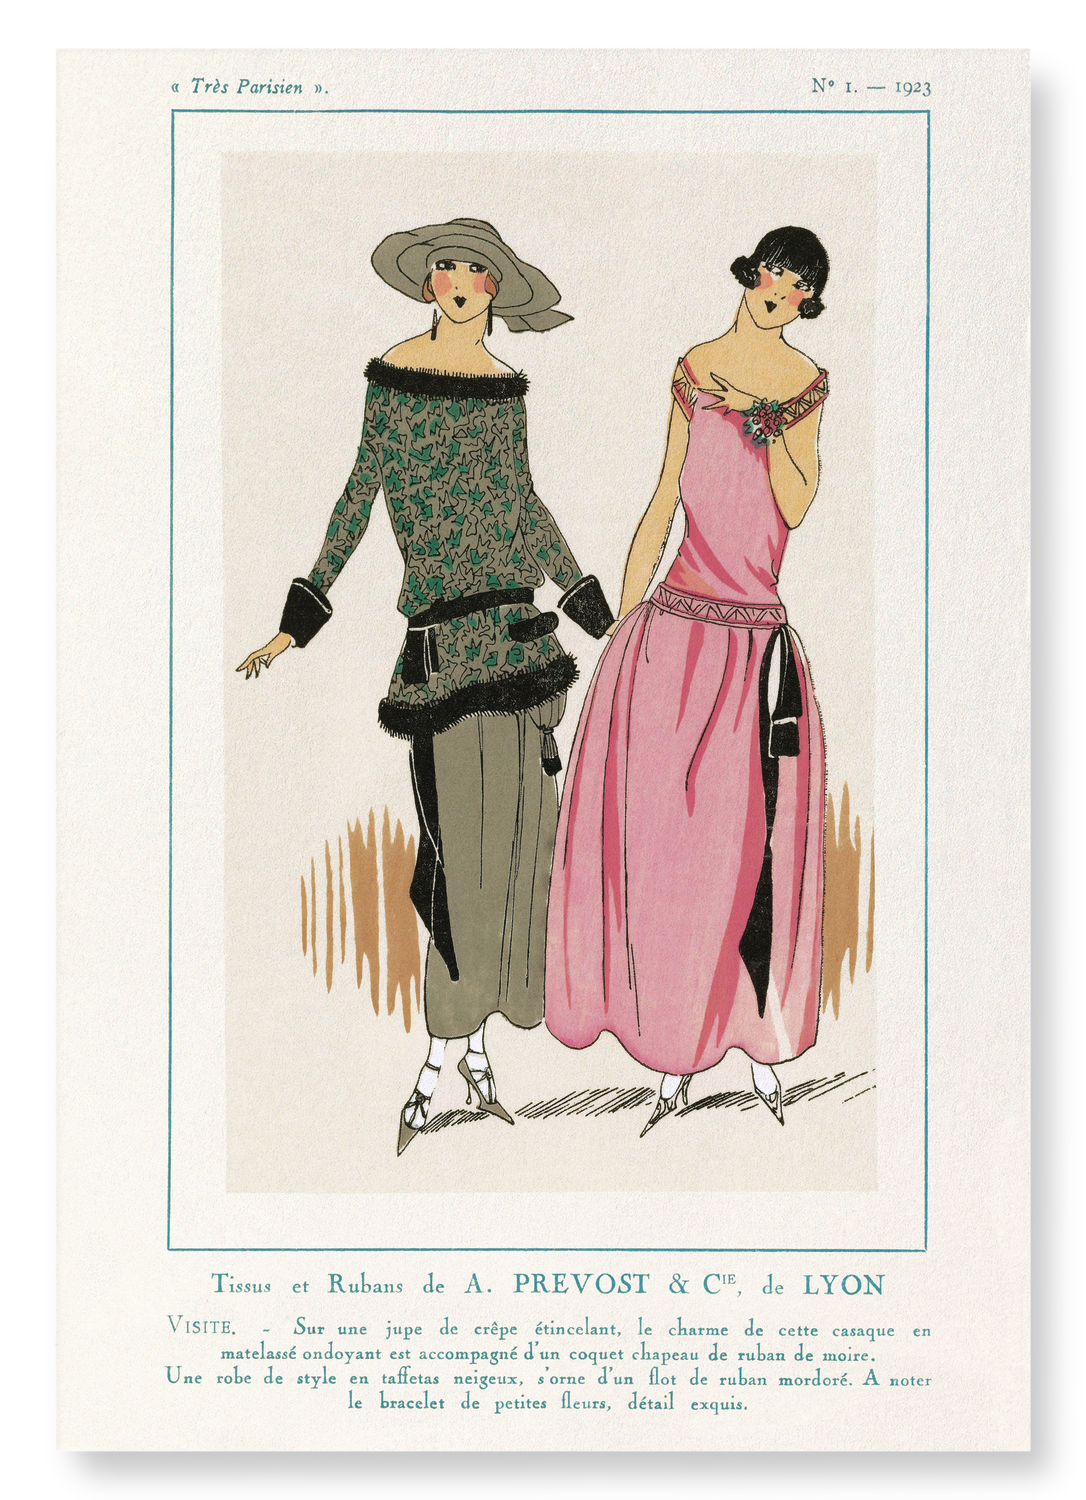 TRÈS PARISIEN - TISSUS ET RUBANS (1923): Vintage Art Print